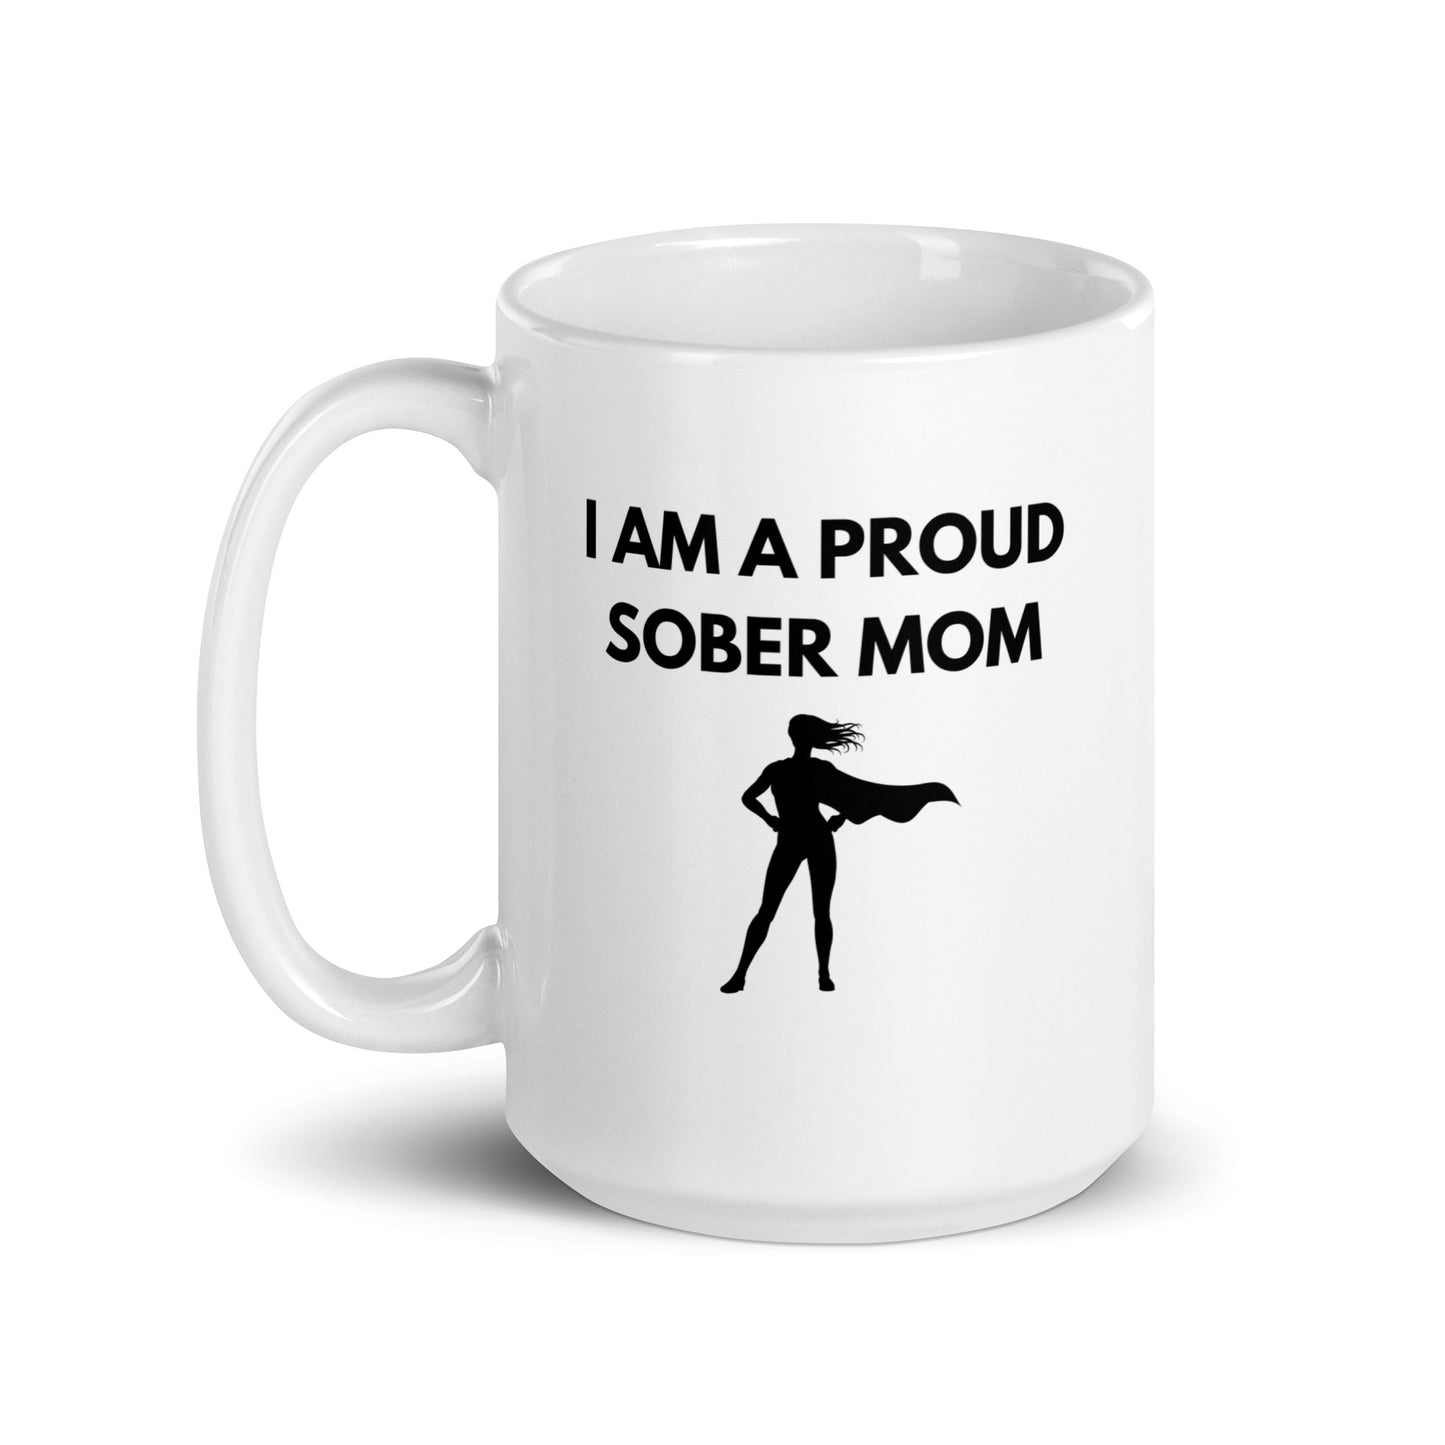 Sober Mom Mug